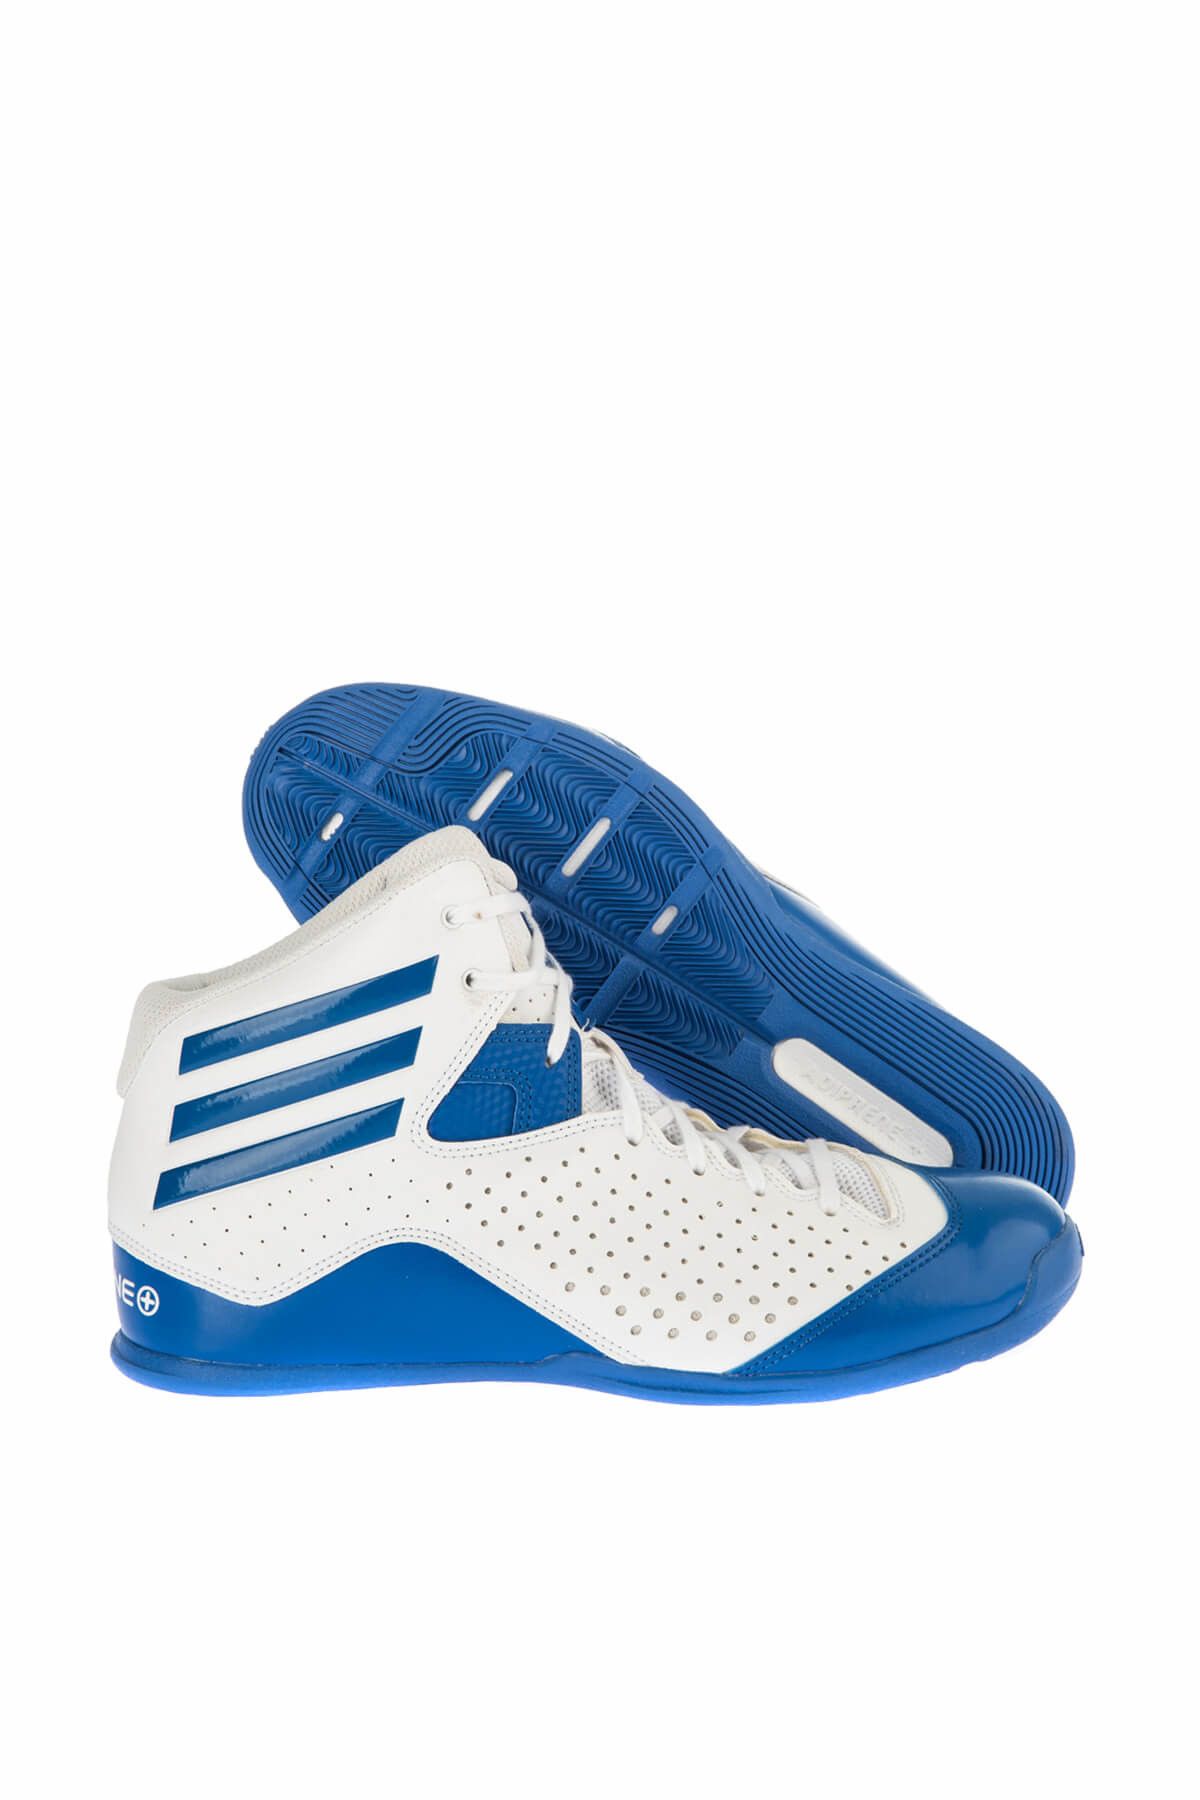 adidas Erkek Basketbol Ayakkabısı  - Nxt Lvl Spd İv - B42438